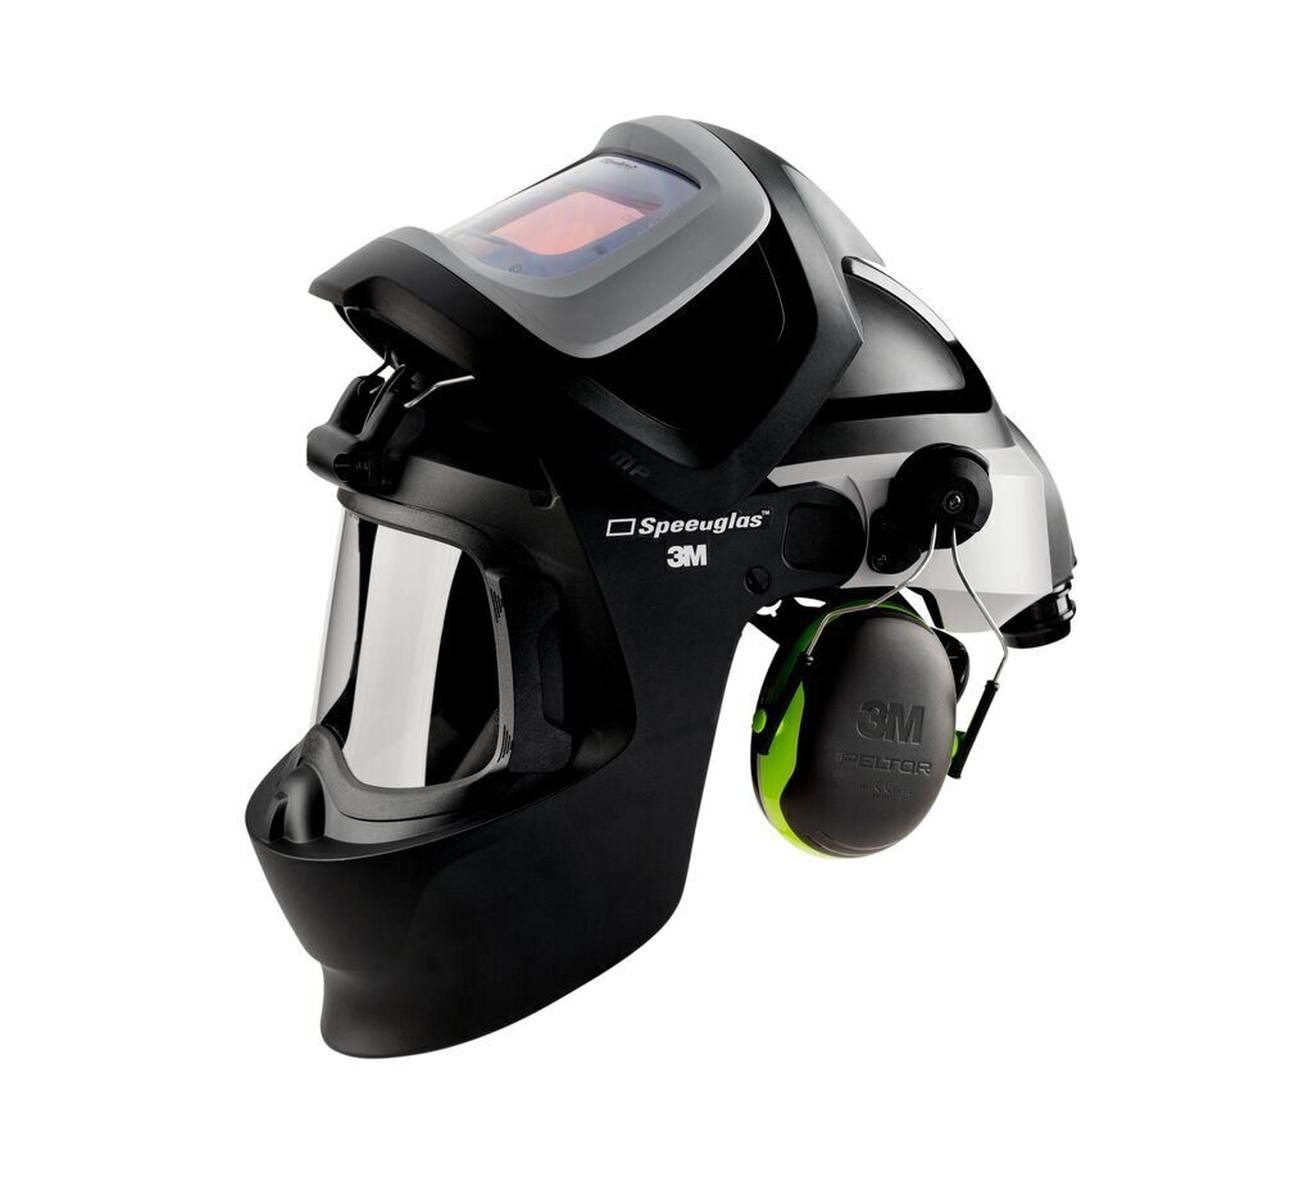 3M Speedglas Masque de soudure 9100 MP sans ADF, avec protection respiratoire à ventilation assistée Adflo, tuyau à air QRS, adaptateur 5333506, débitmètre d'air, préfiltre, pare-étincelles, filtre à particules, batterie lithium-ion et chargeur,